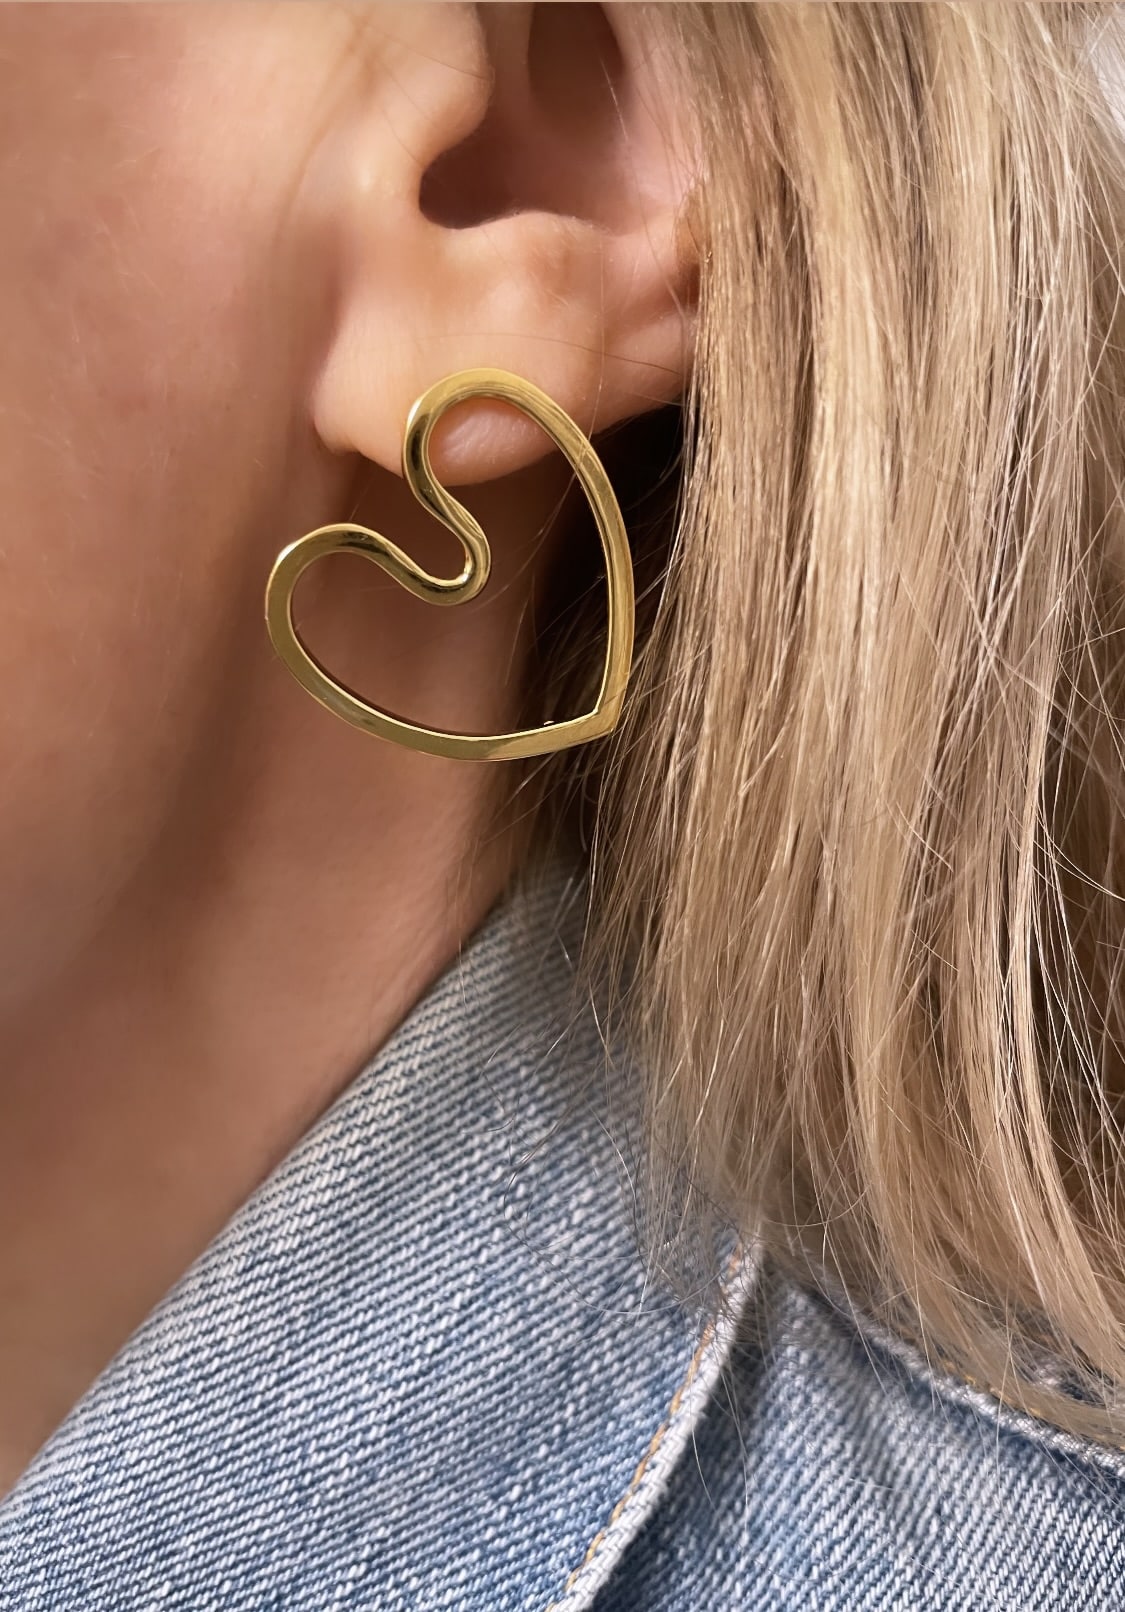 Boucles d'oreilles earrings size M COEUR AMOUREUX by Sande Paris.   2